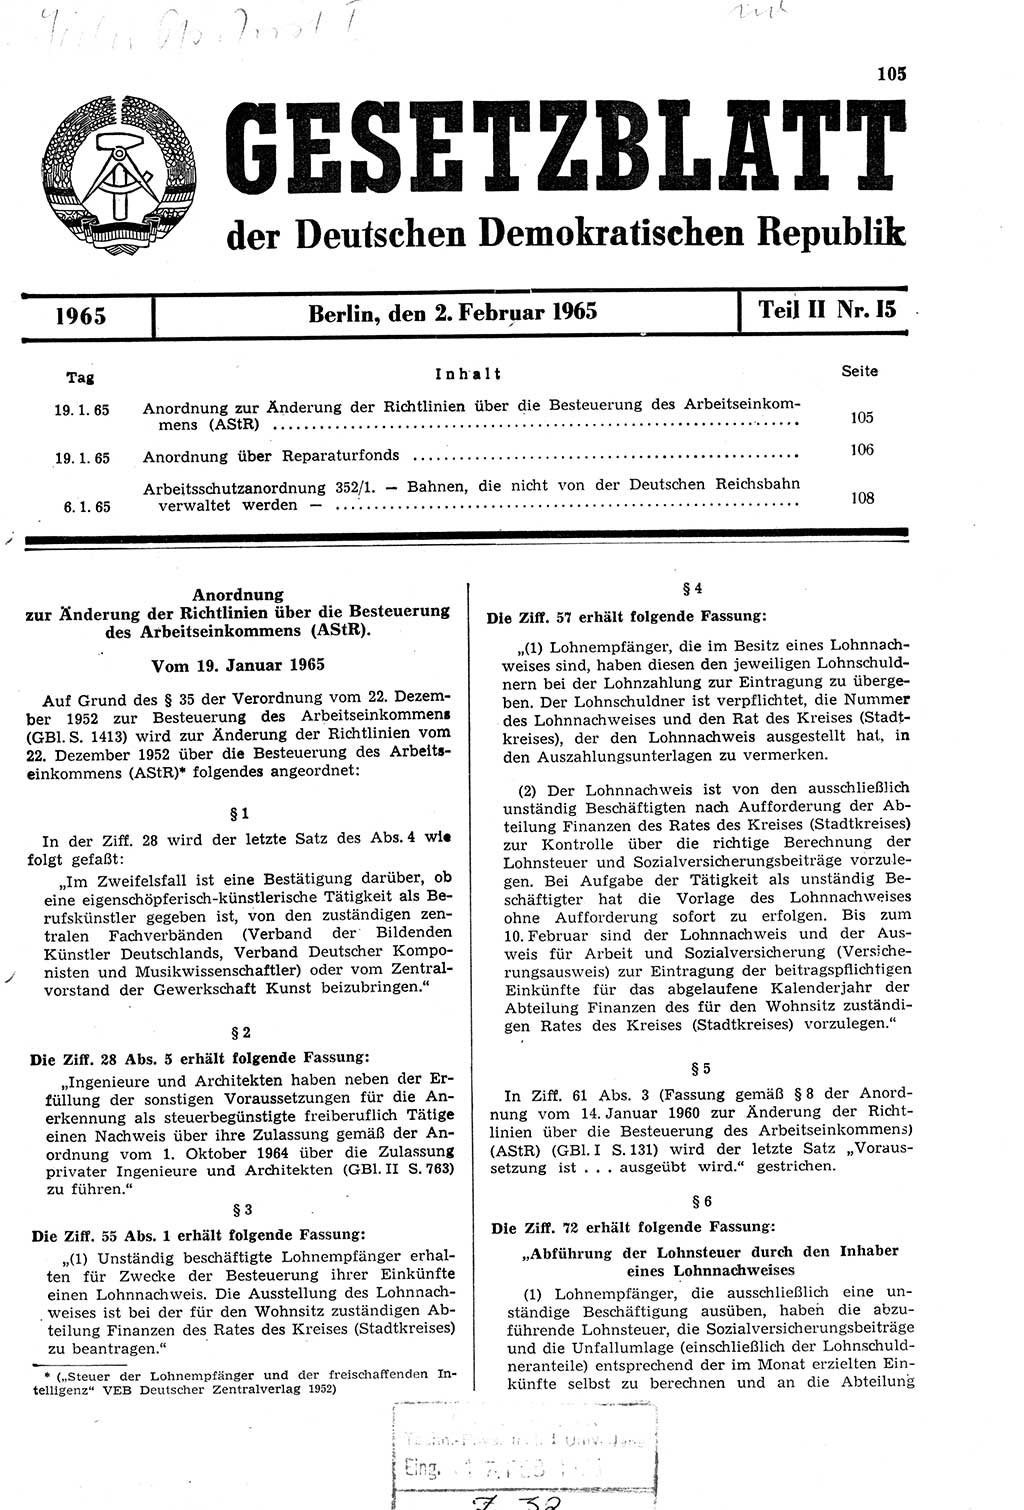 Gesetzblatt (GBl.) der Deutschen Demokratischen Republik (DDR) Teil ⅠⅠ 1965, Seite 105 (GBl. DDR ⅠⅠ 1965, S. 105)